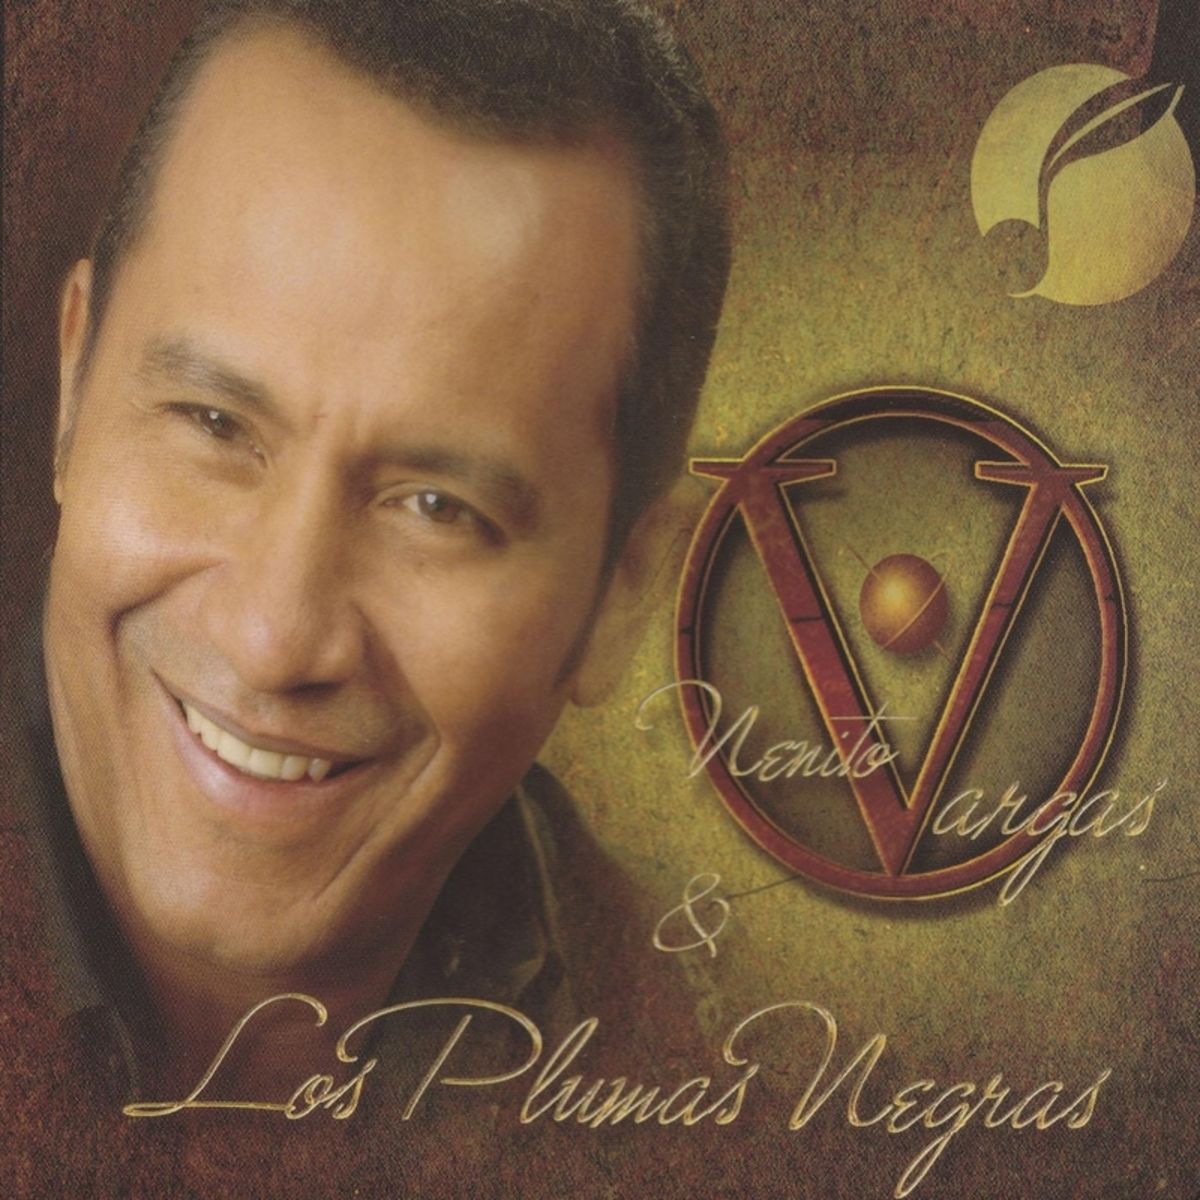 11 - Nenito Vargas y los Plumas Negras - Me Marchare (Version Pop Latino).mp3